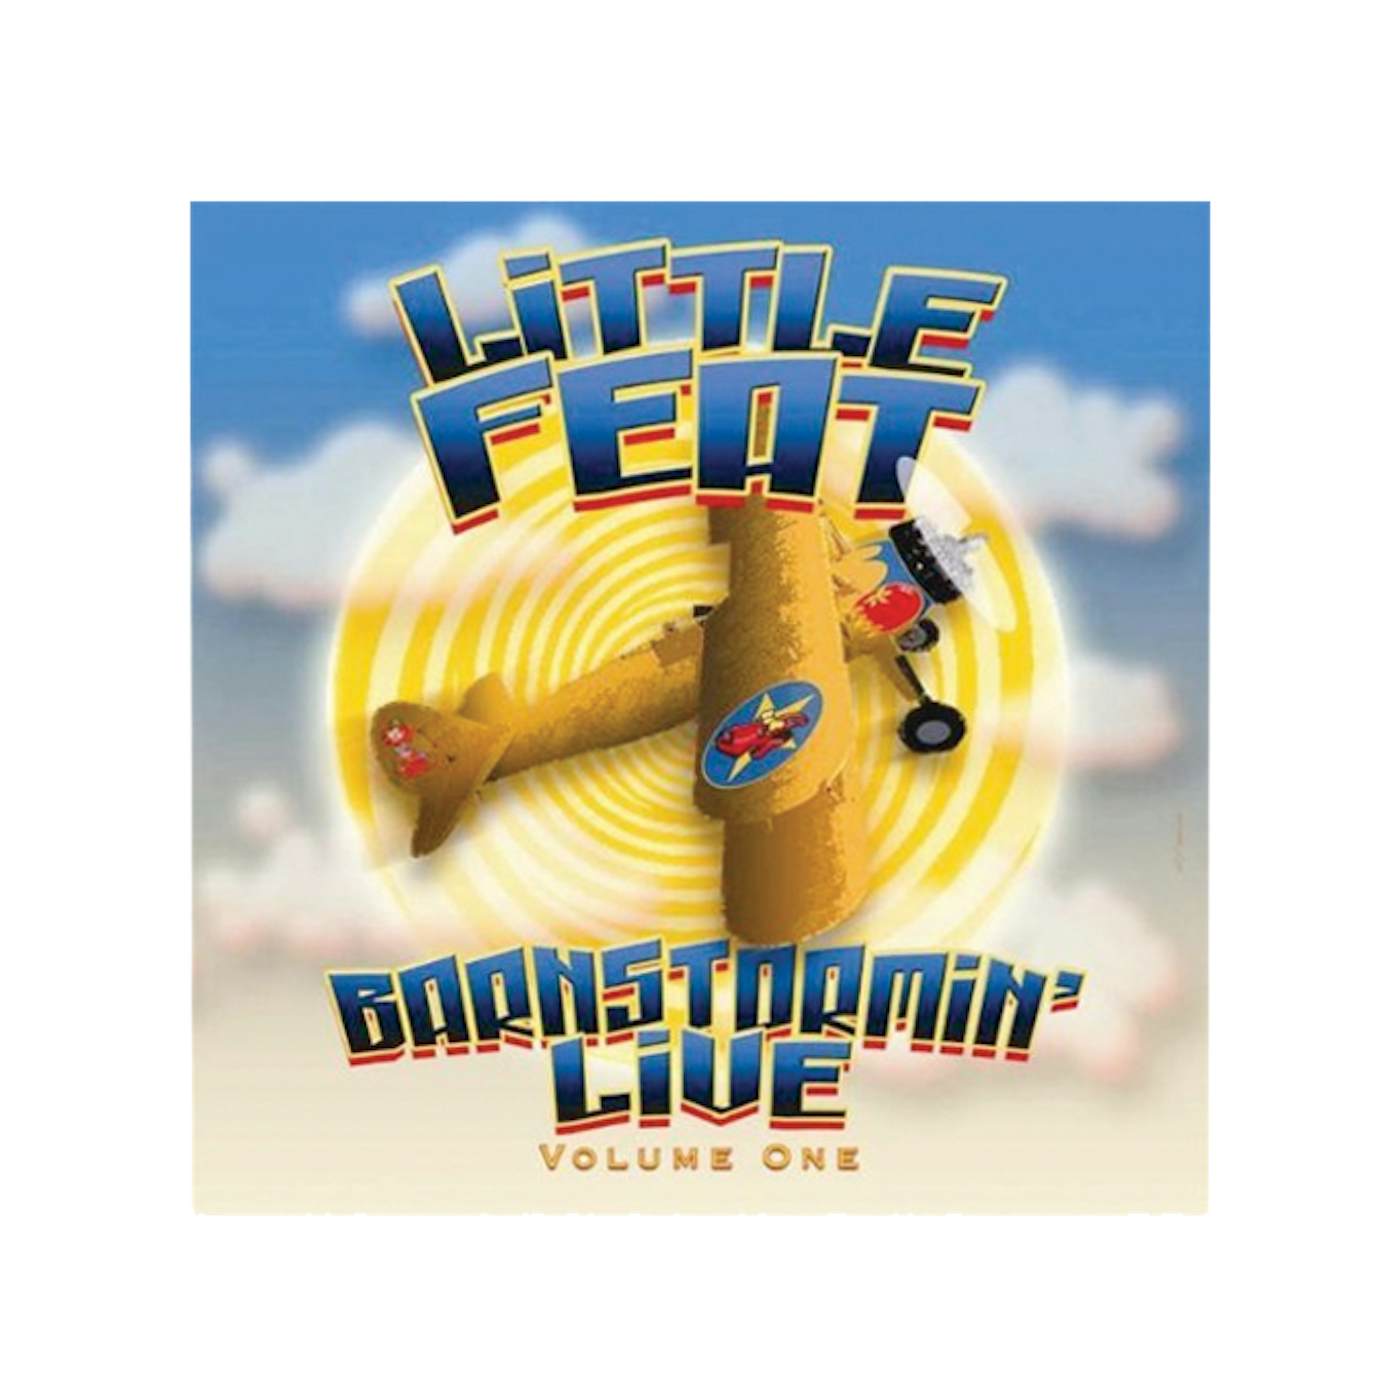 Little Feat "Barnstormin' Live Vol 1" CD